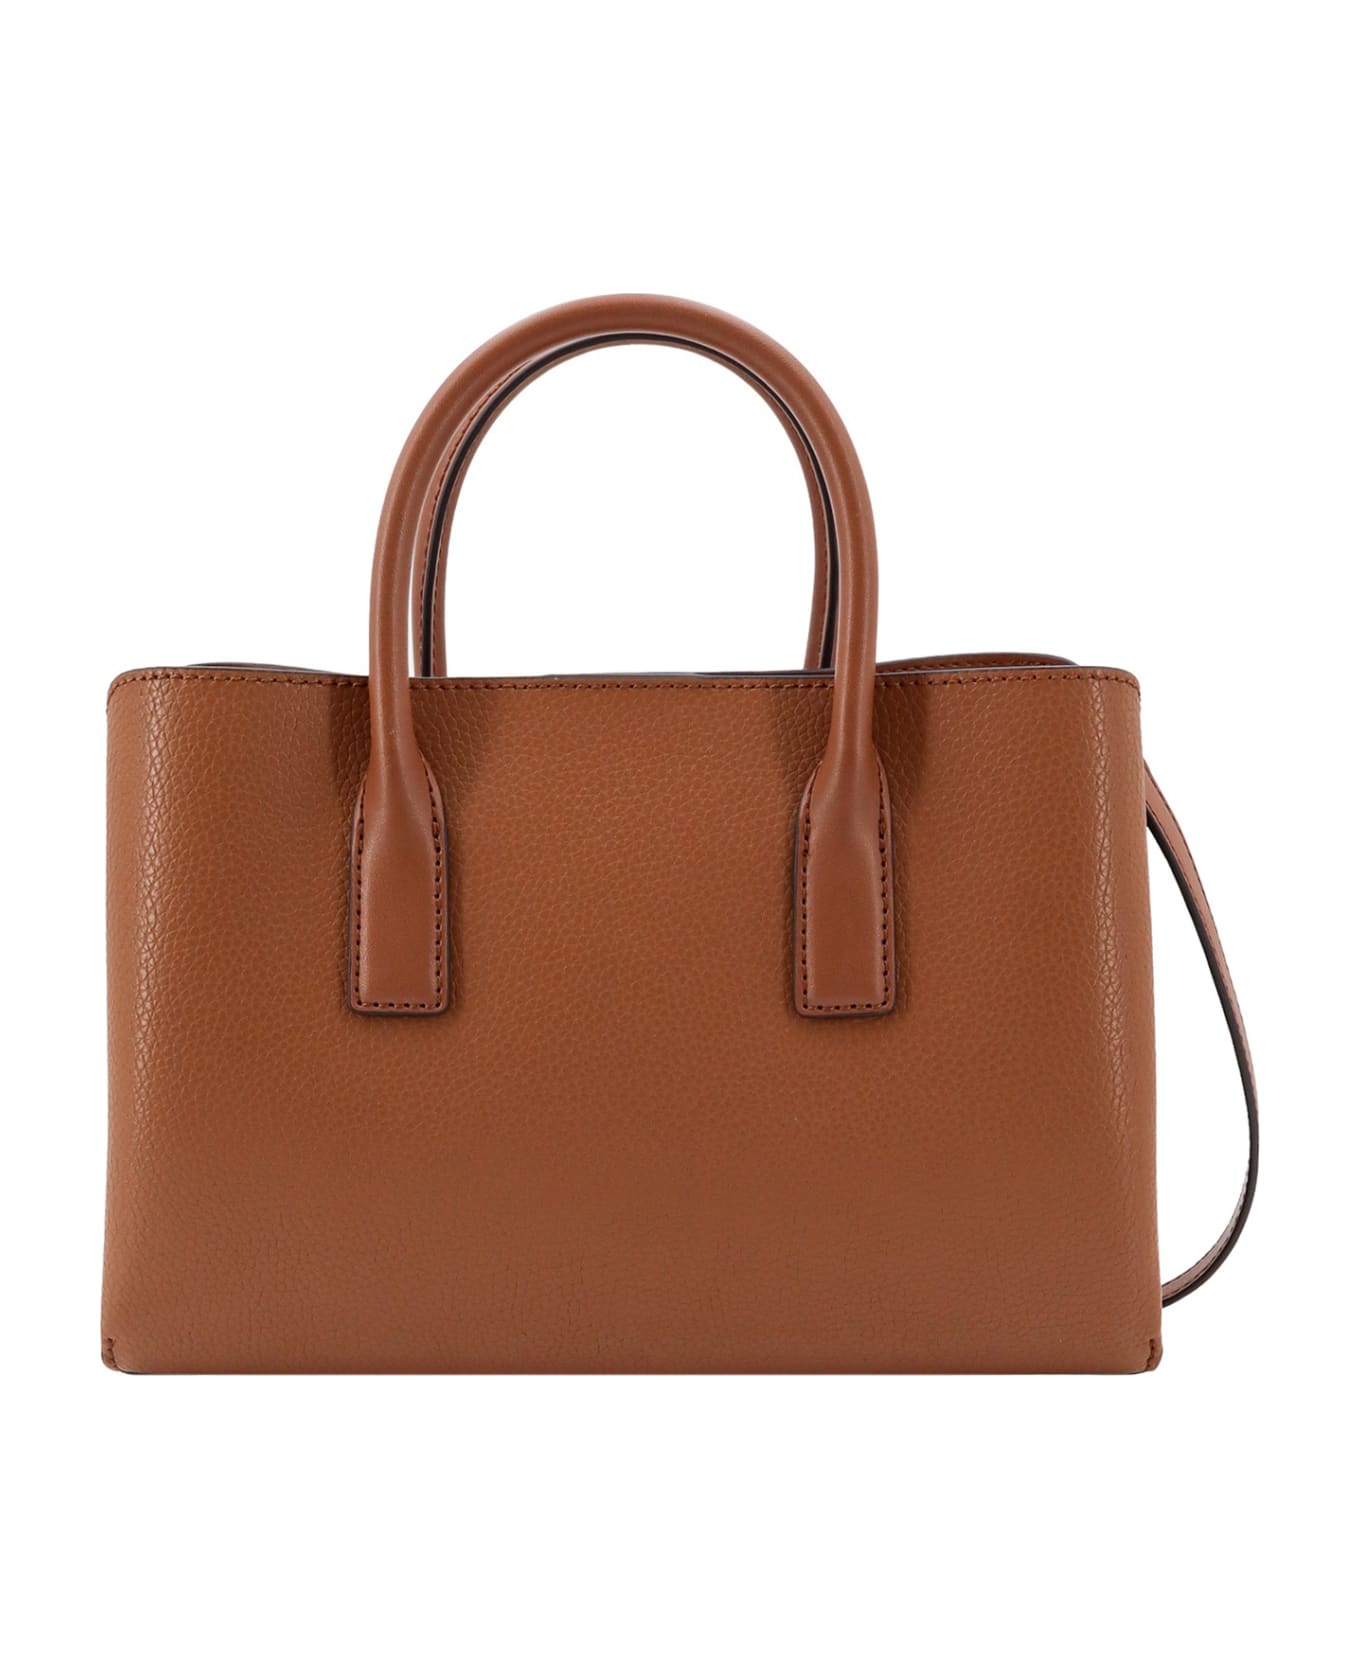 Michael Kors Collection Ruthie Handbag - Luggage